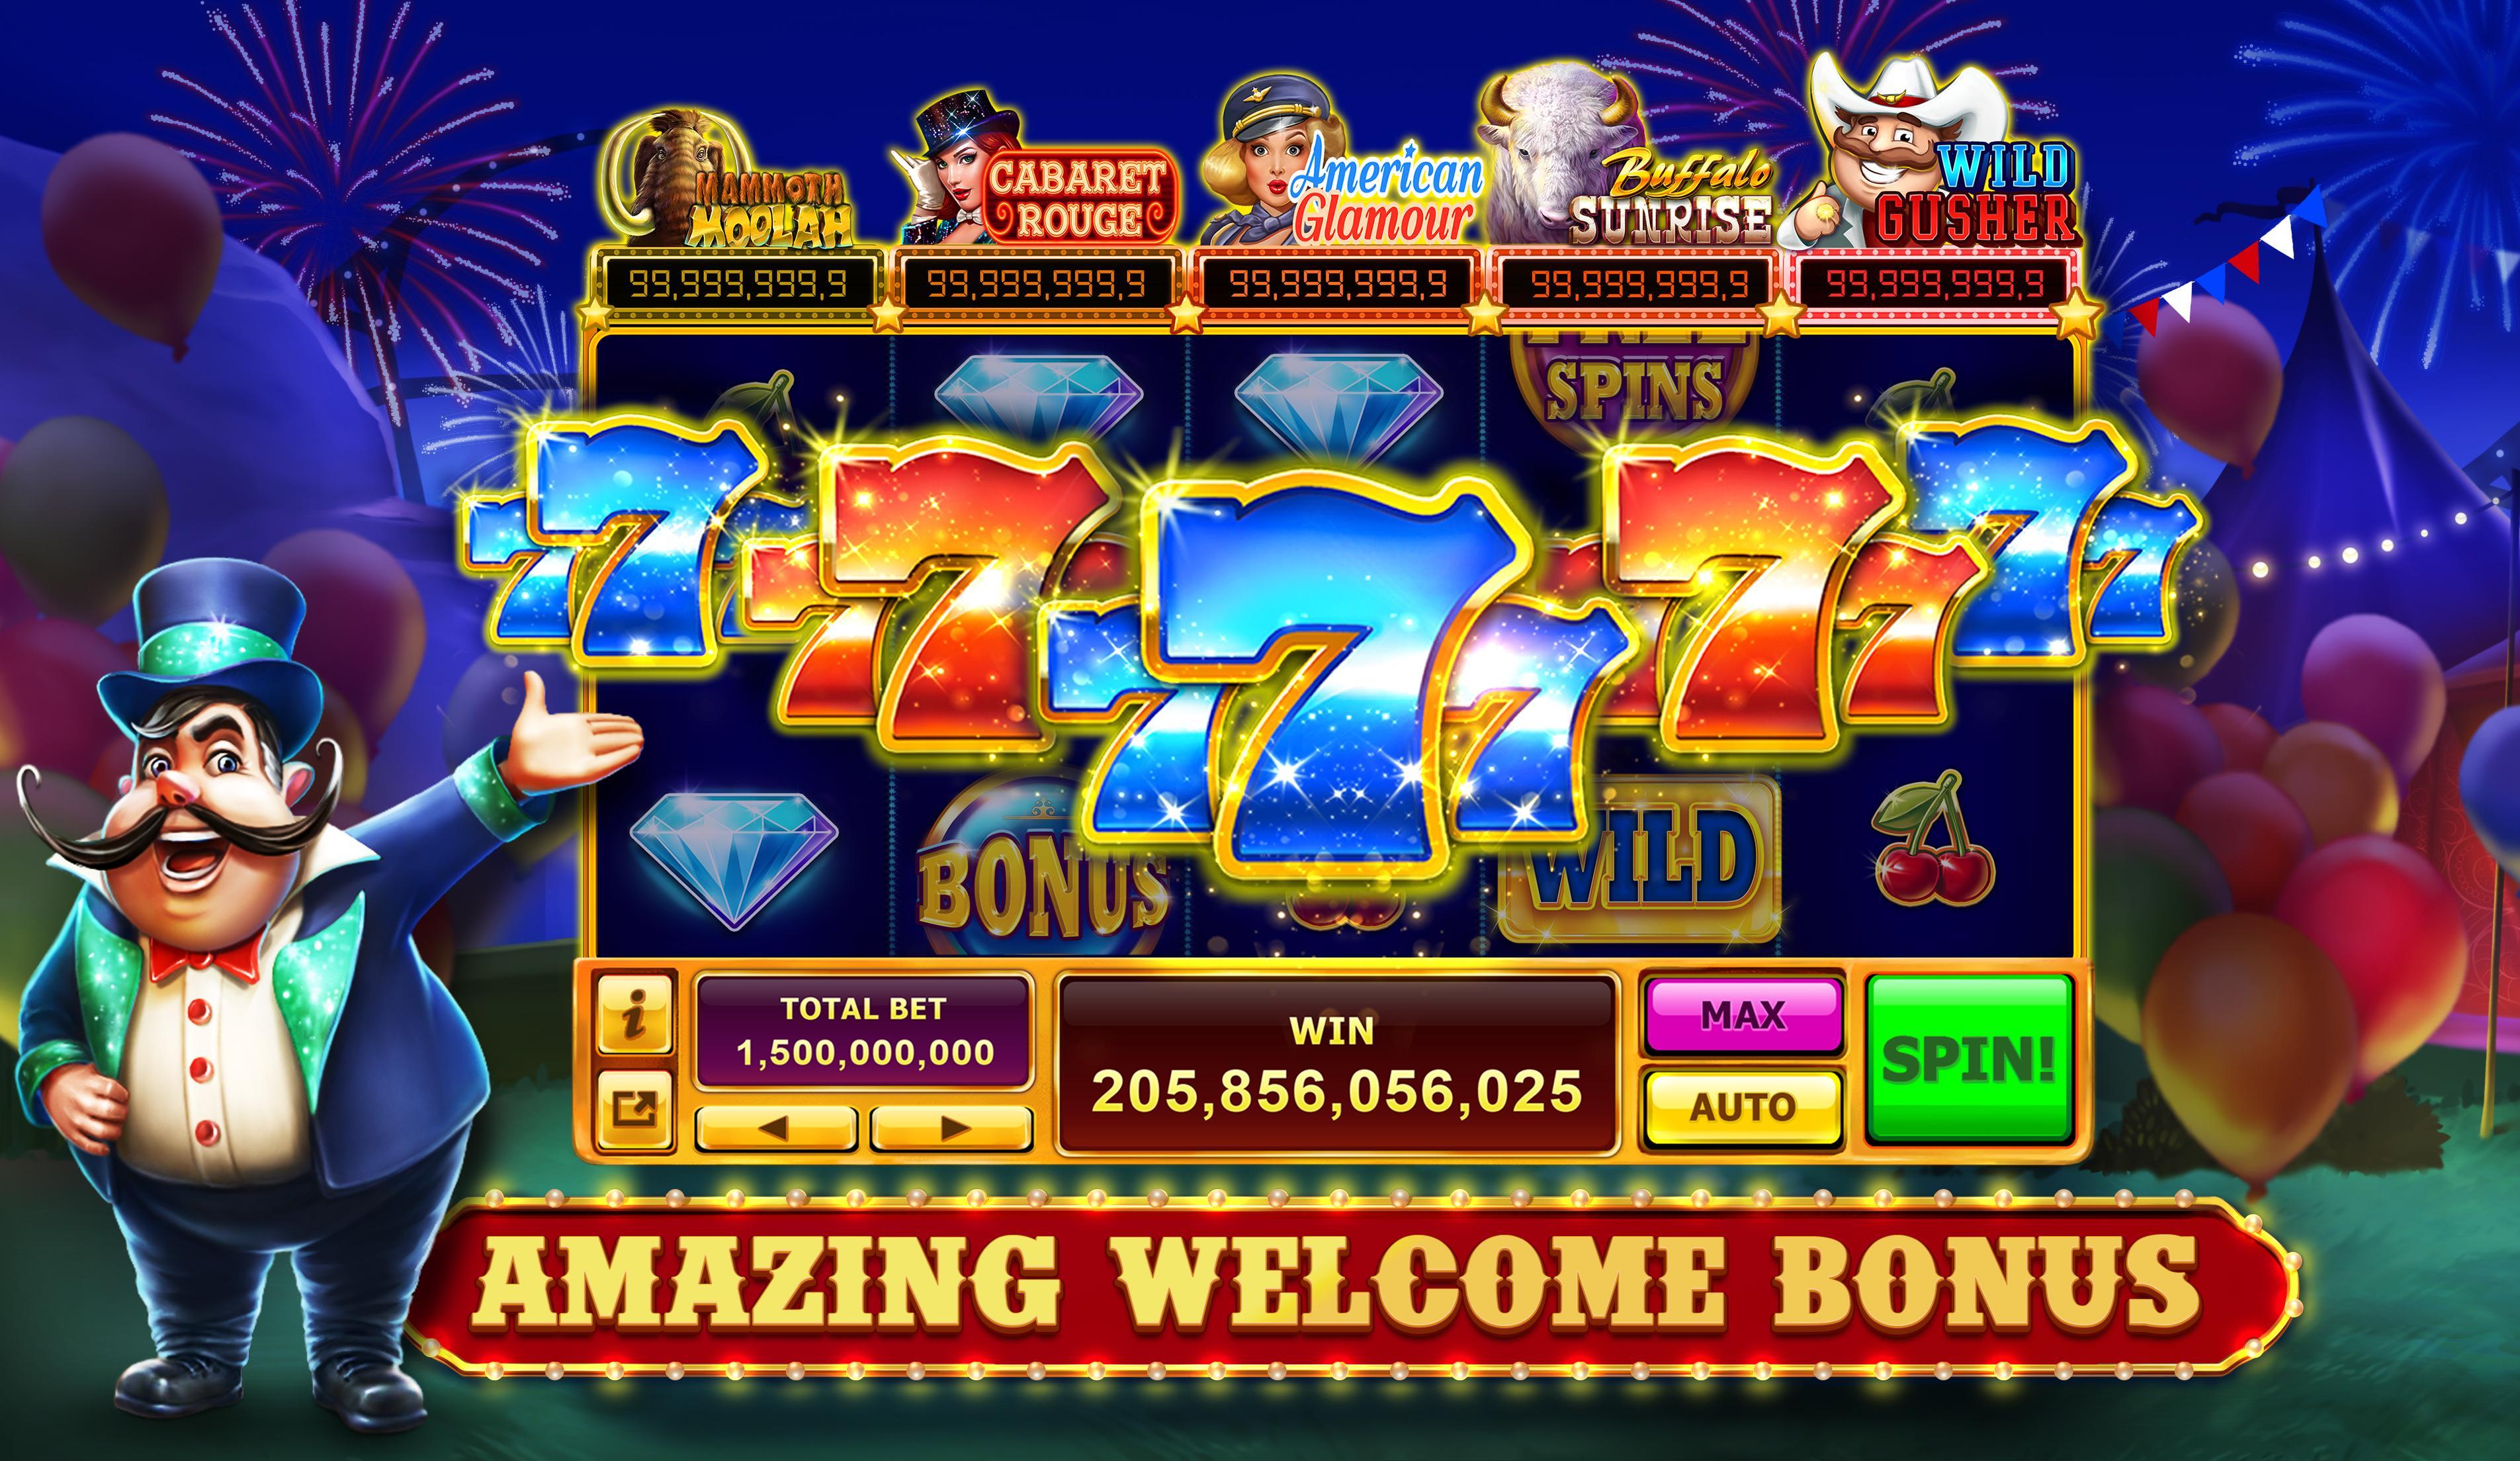 Free download casino online games играть онлайн черепашки ниндзя в карты